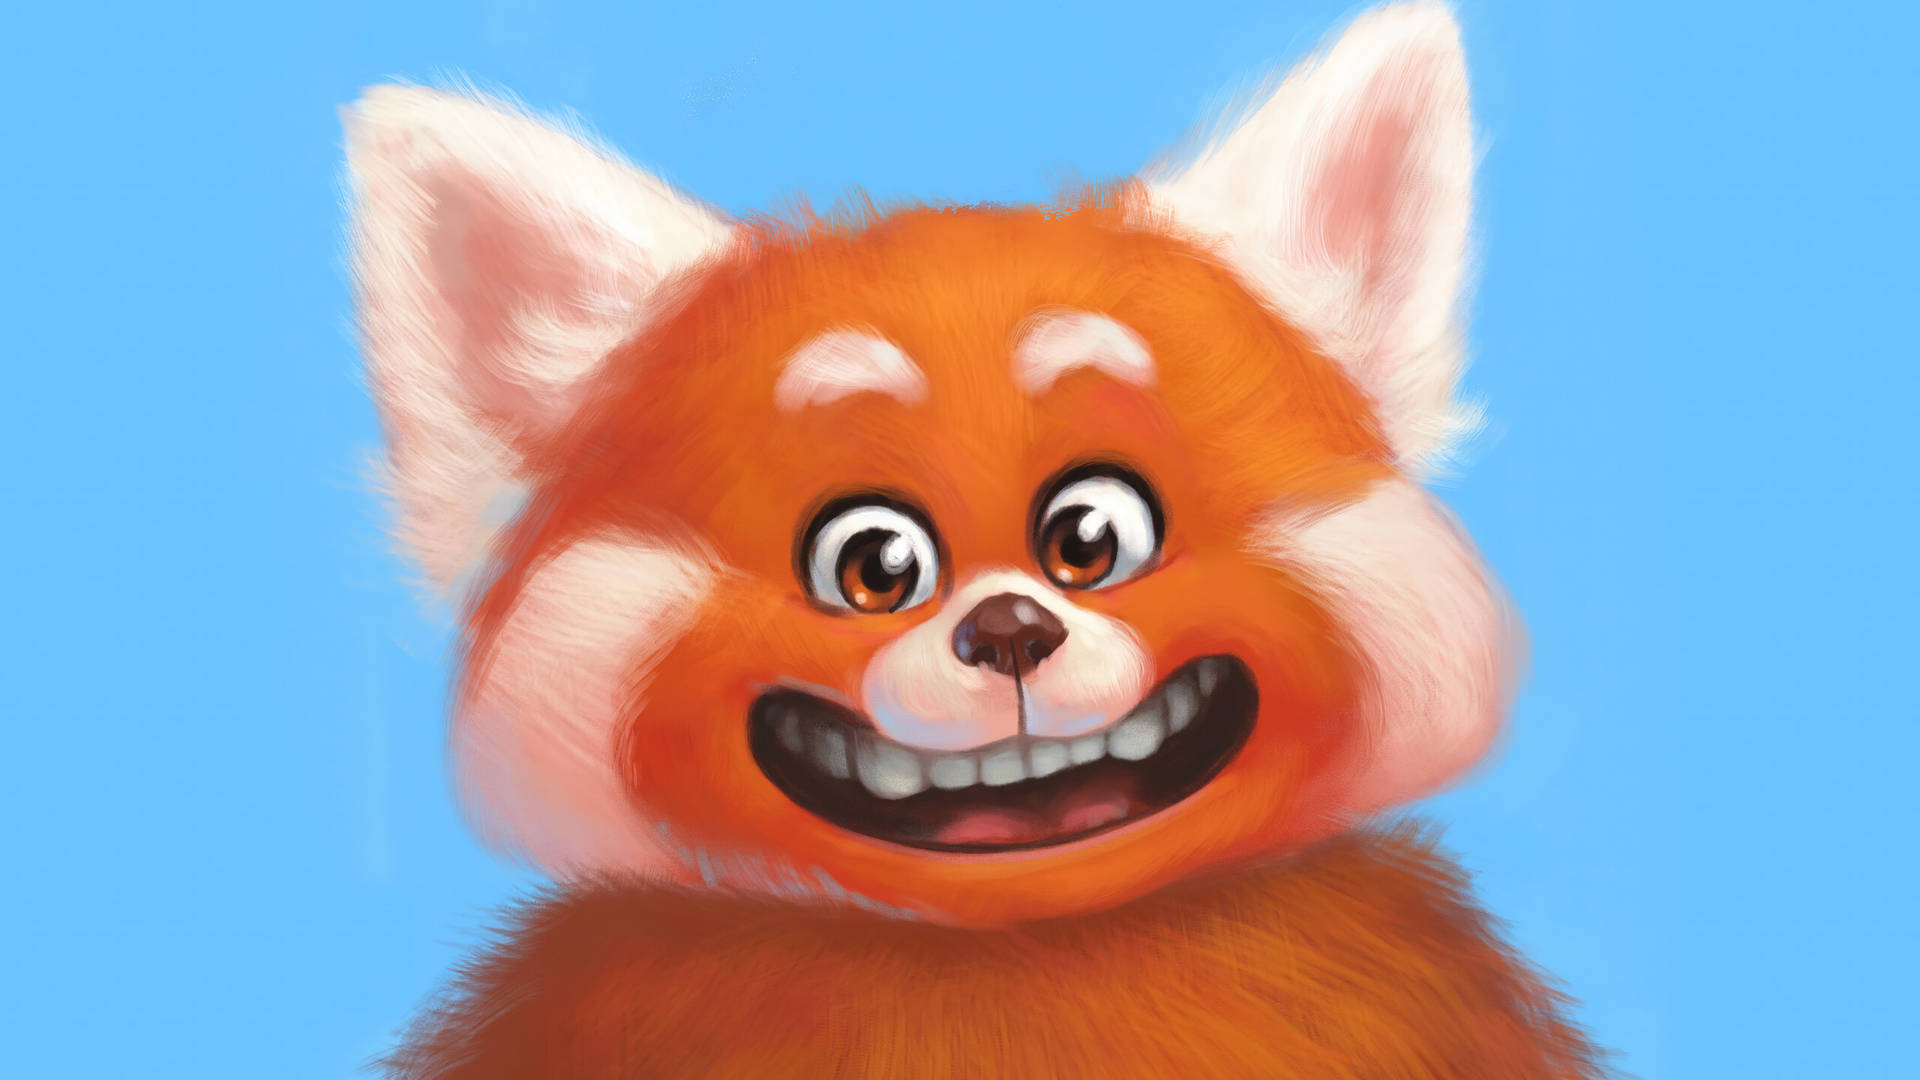 Turning Red Panda Digital Art Background